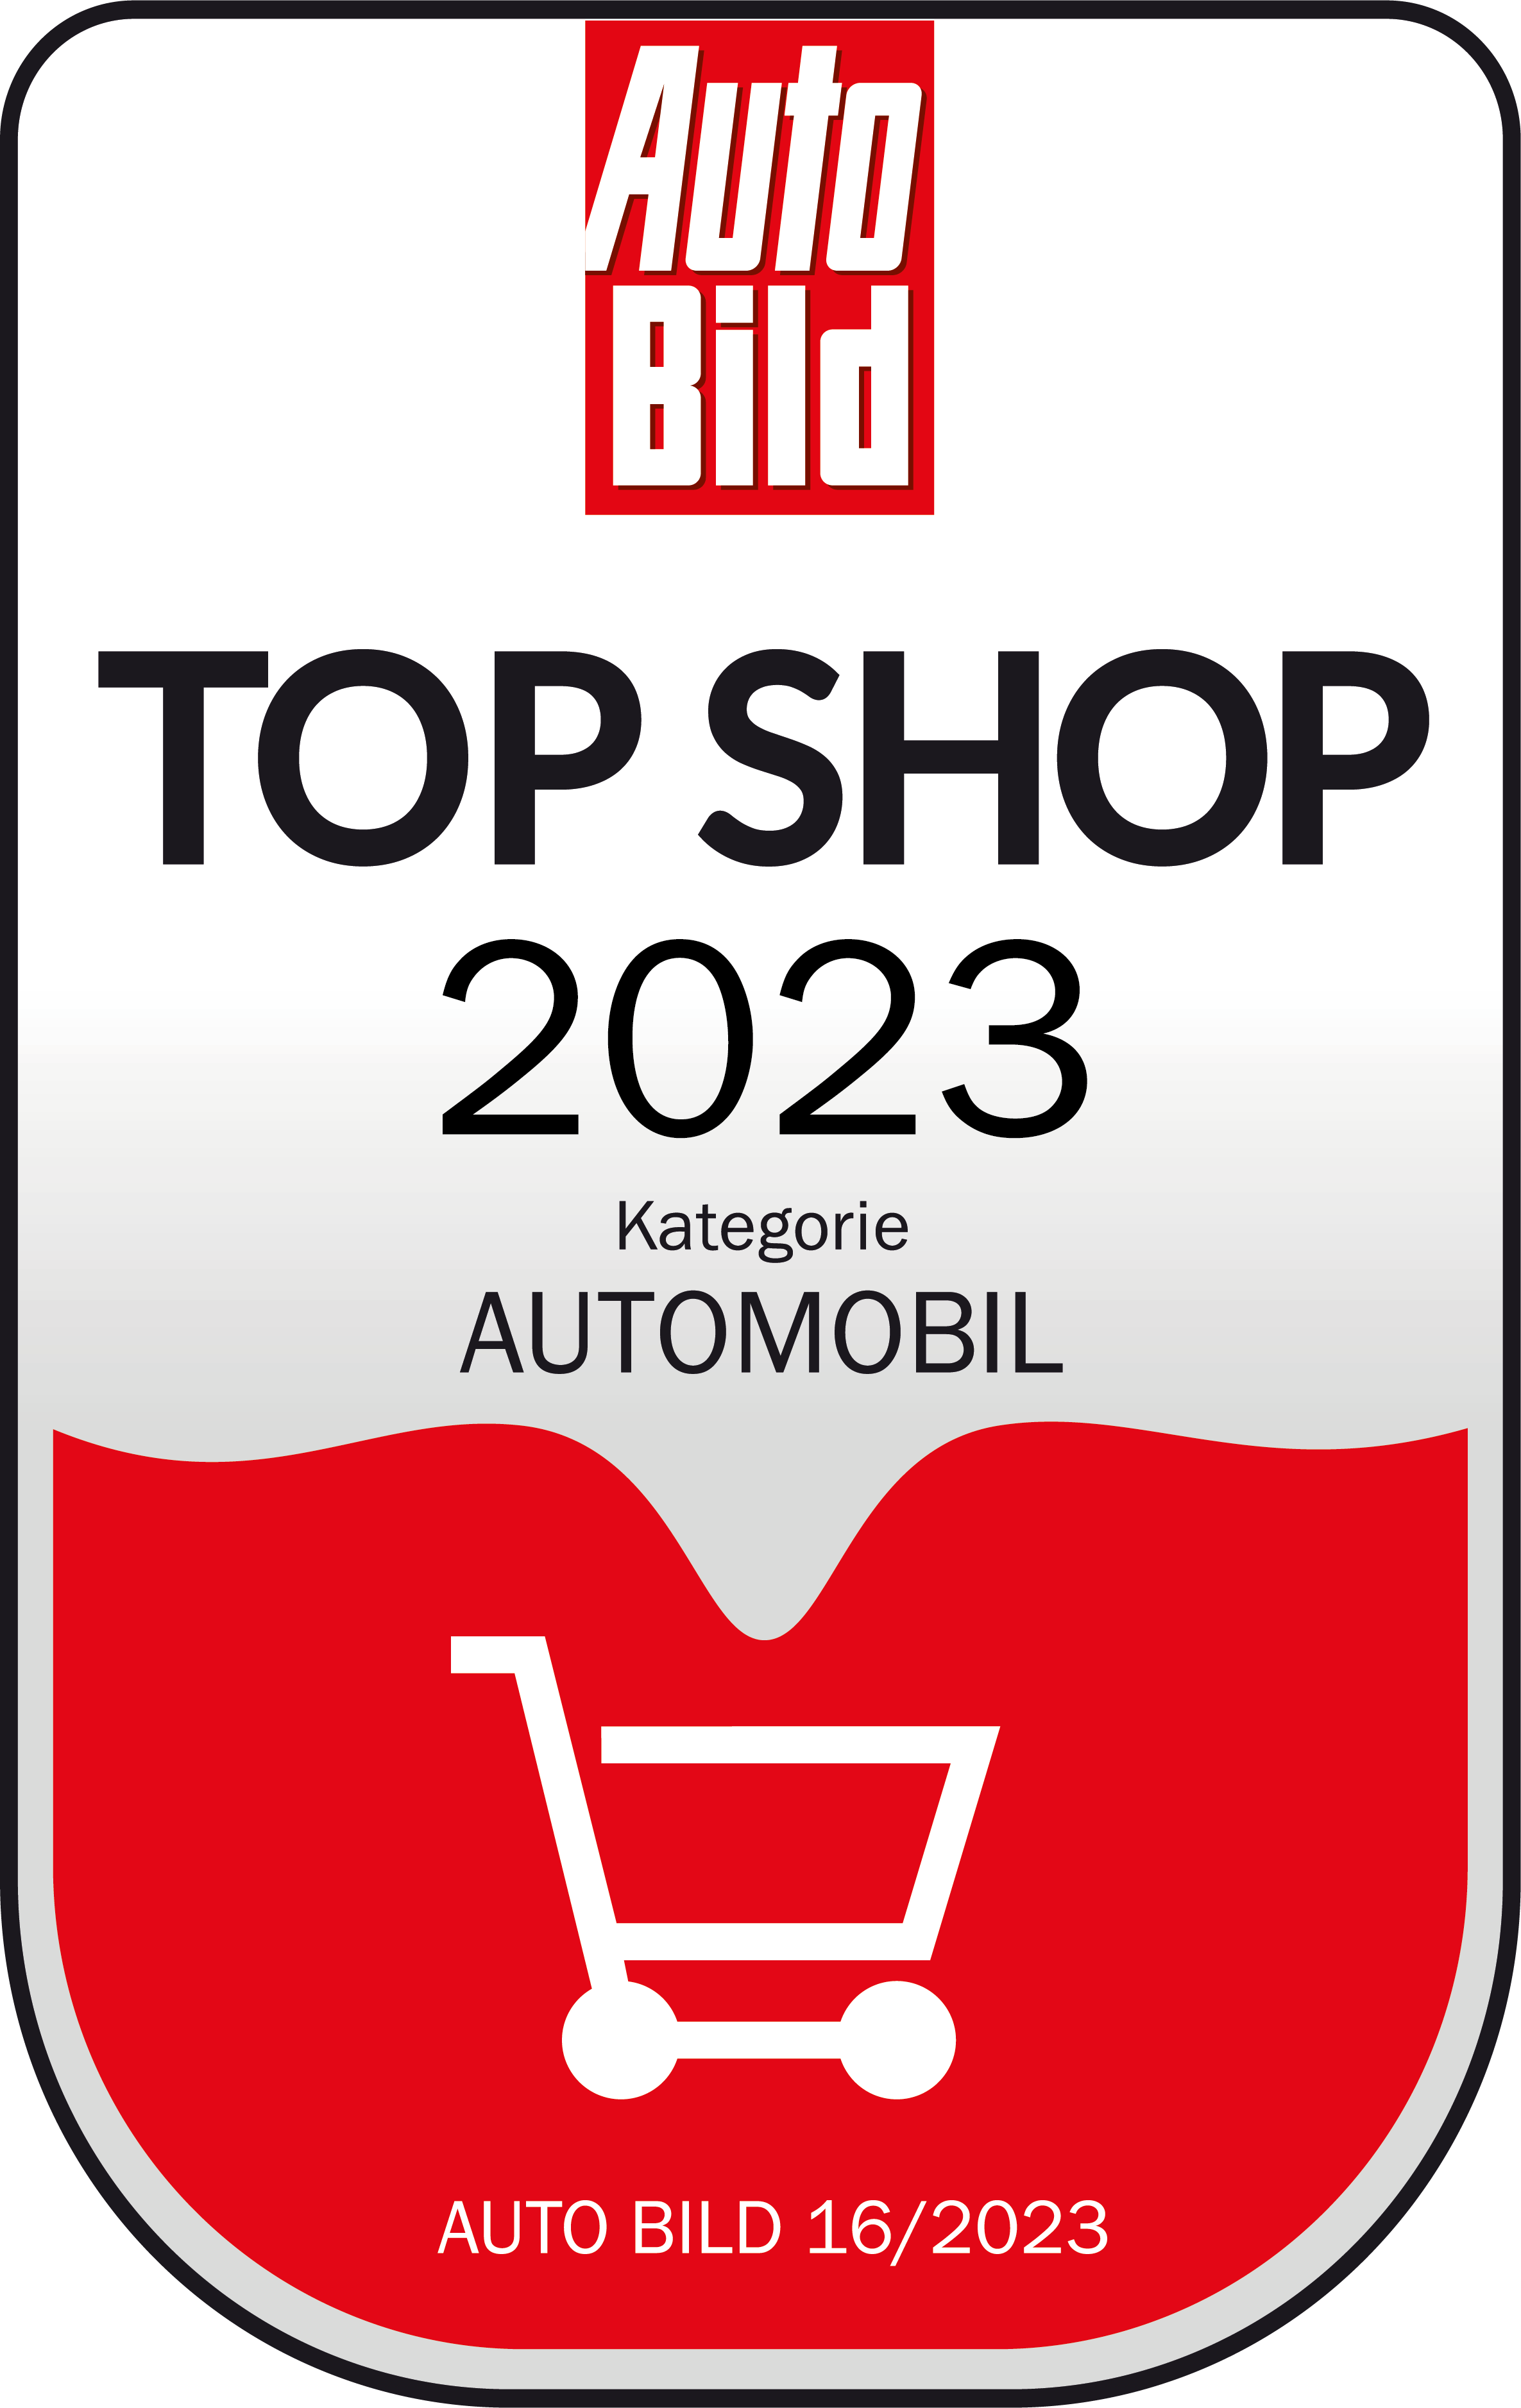 Top Shop 2023 Kategorie Automobil